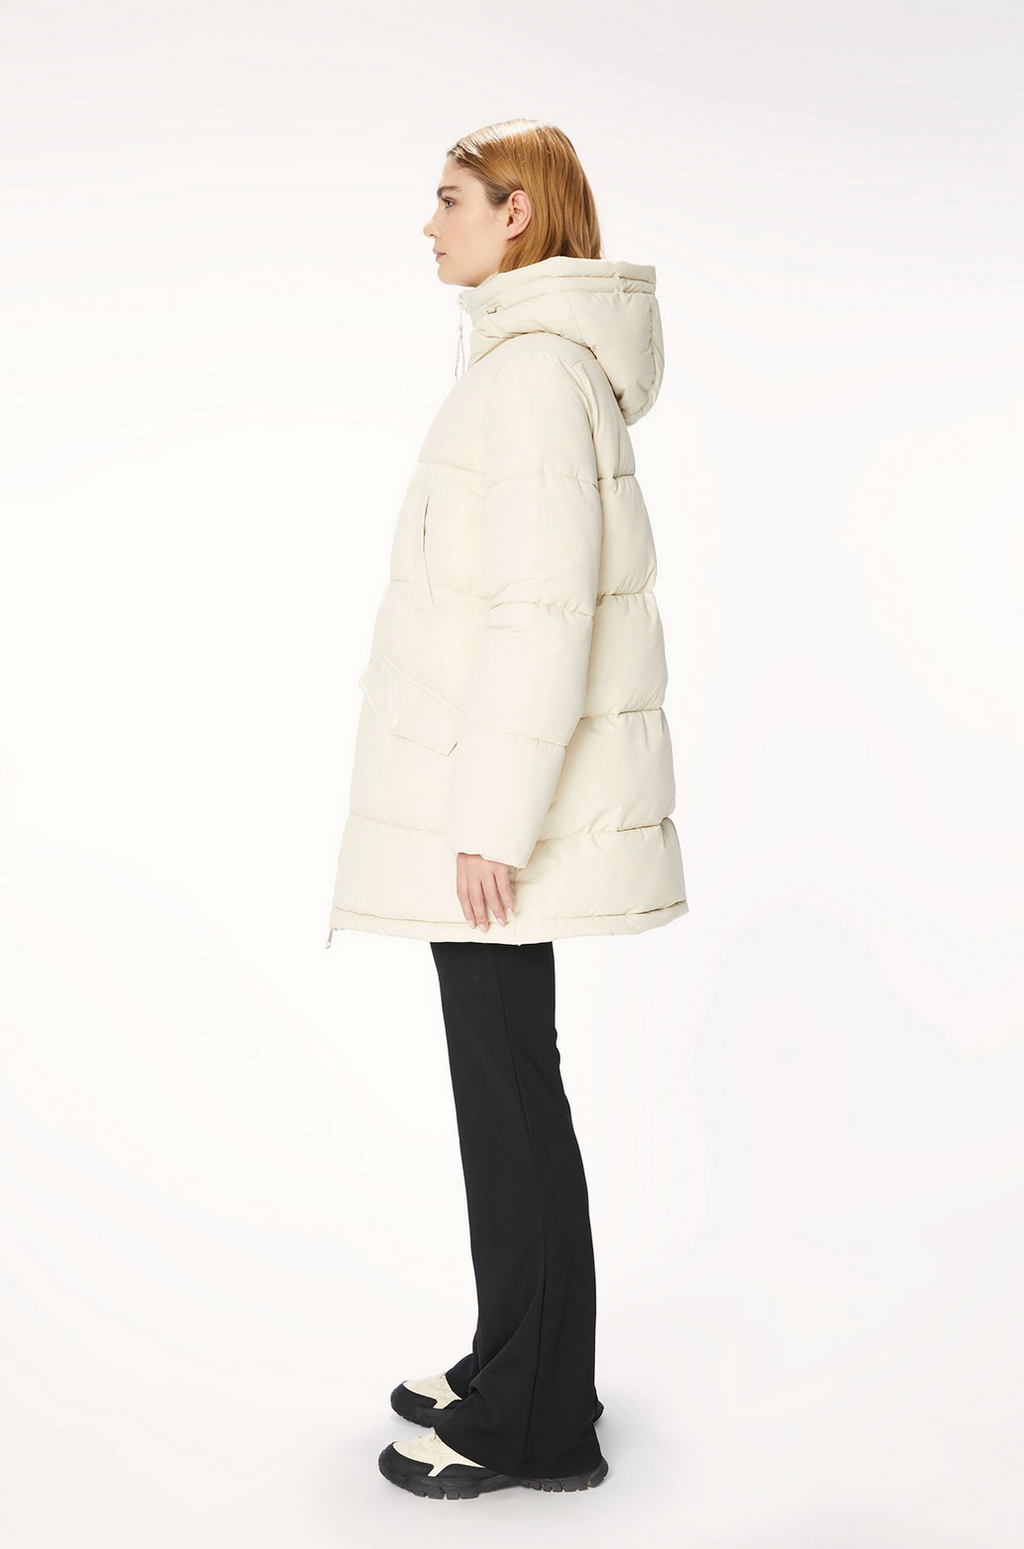 Model wears cream puffer jacket. Side view.